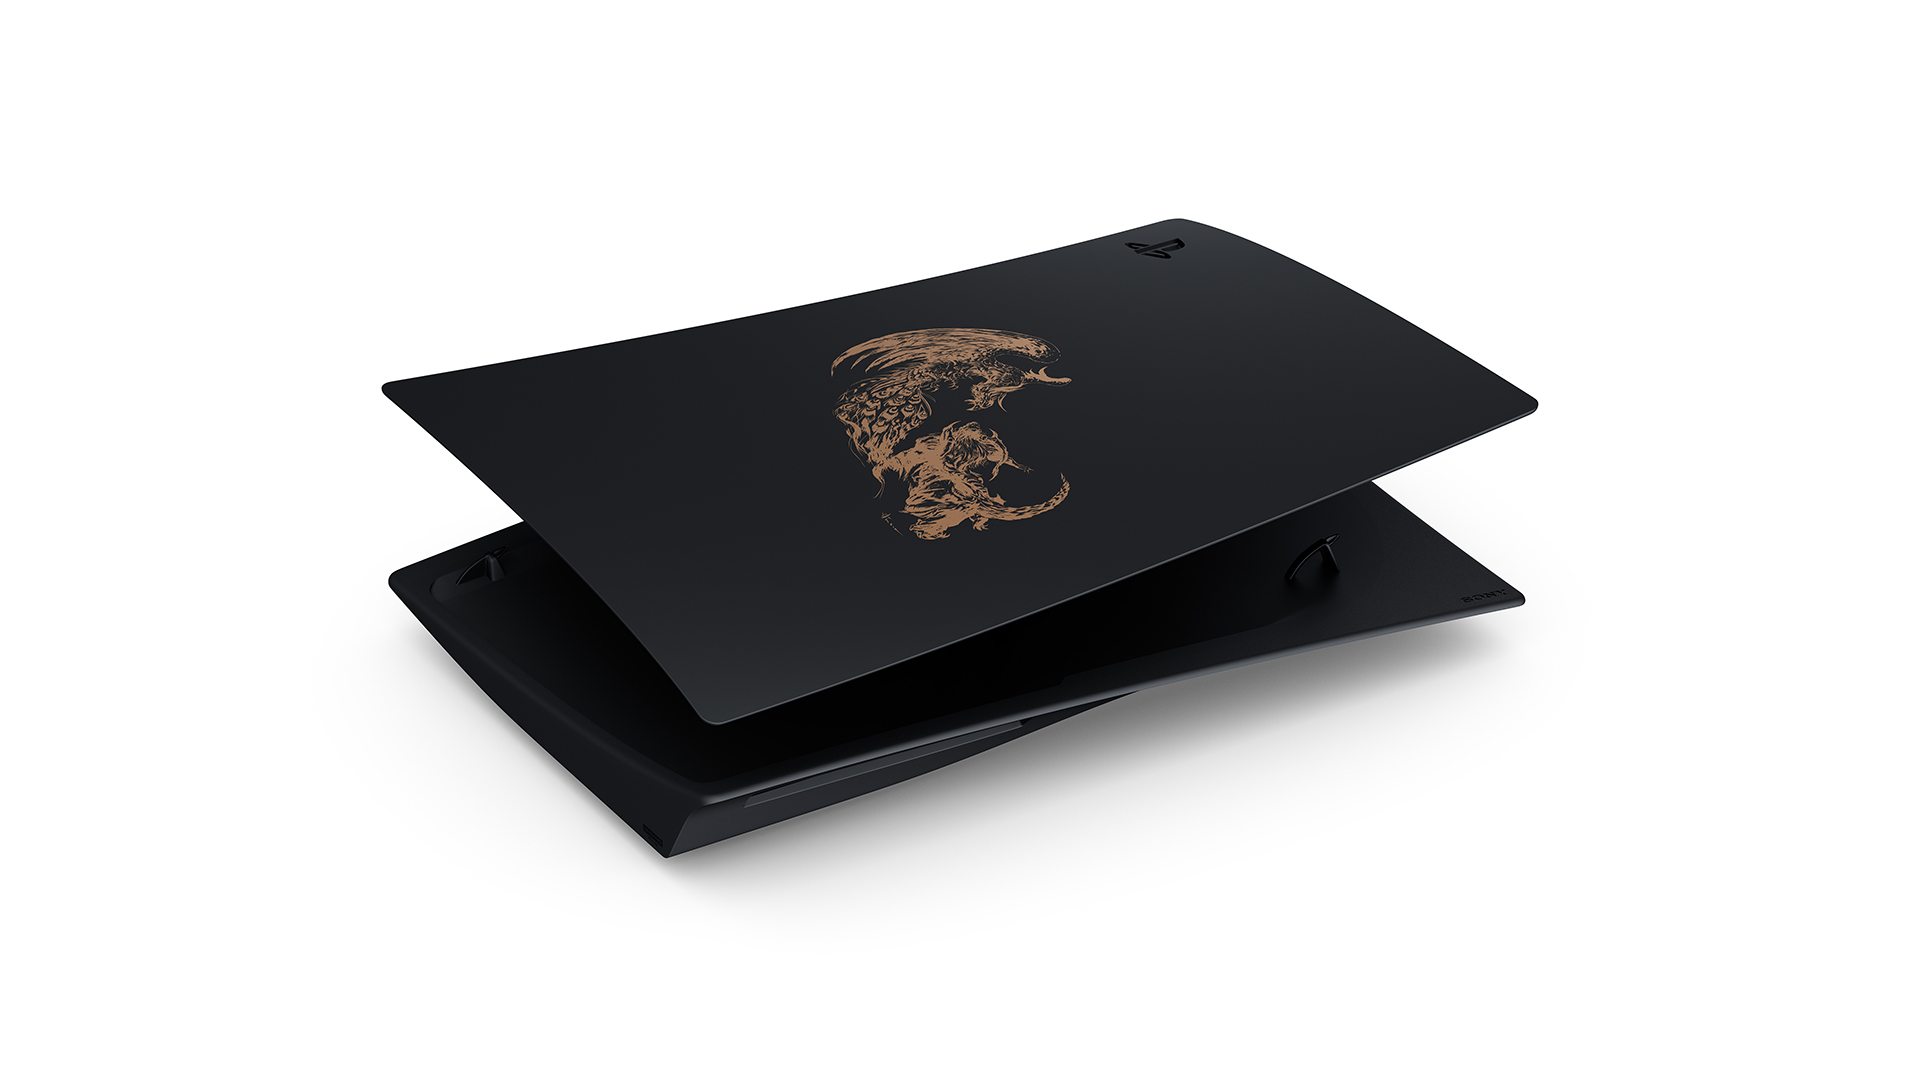 PS5 FINAL FANTASY XVI Console Unboxing! + DualSense +